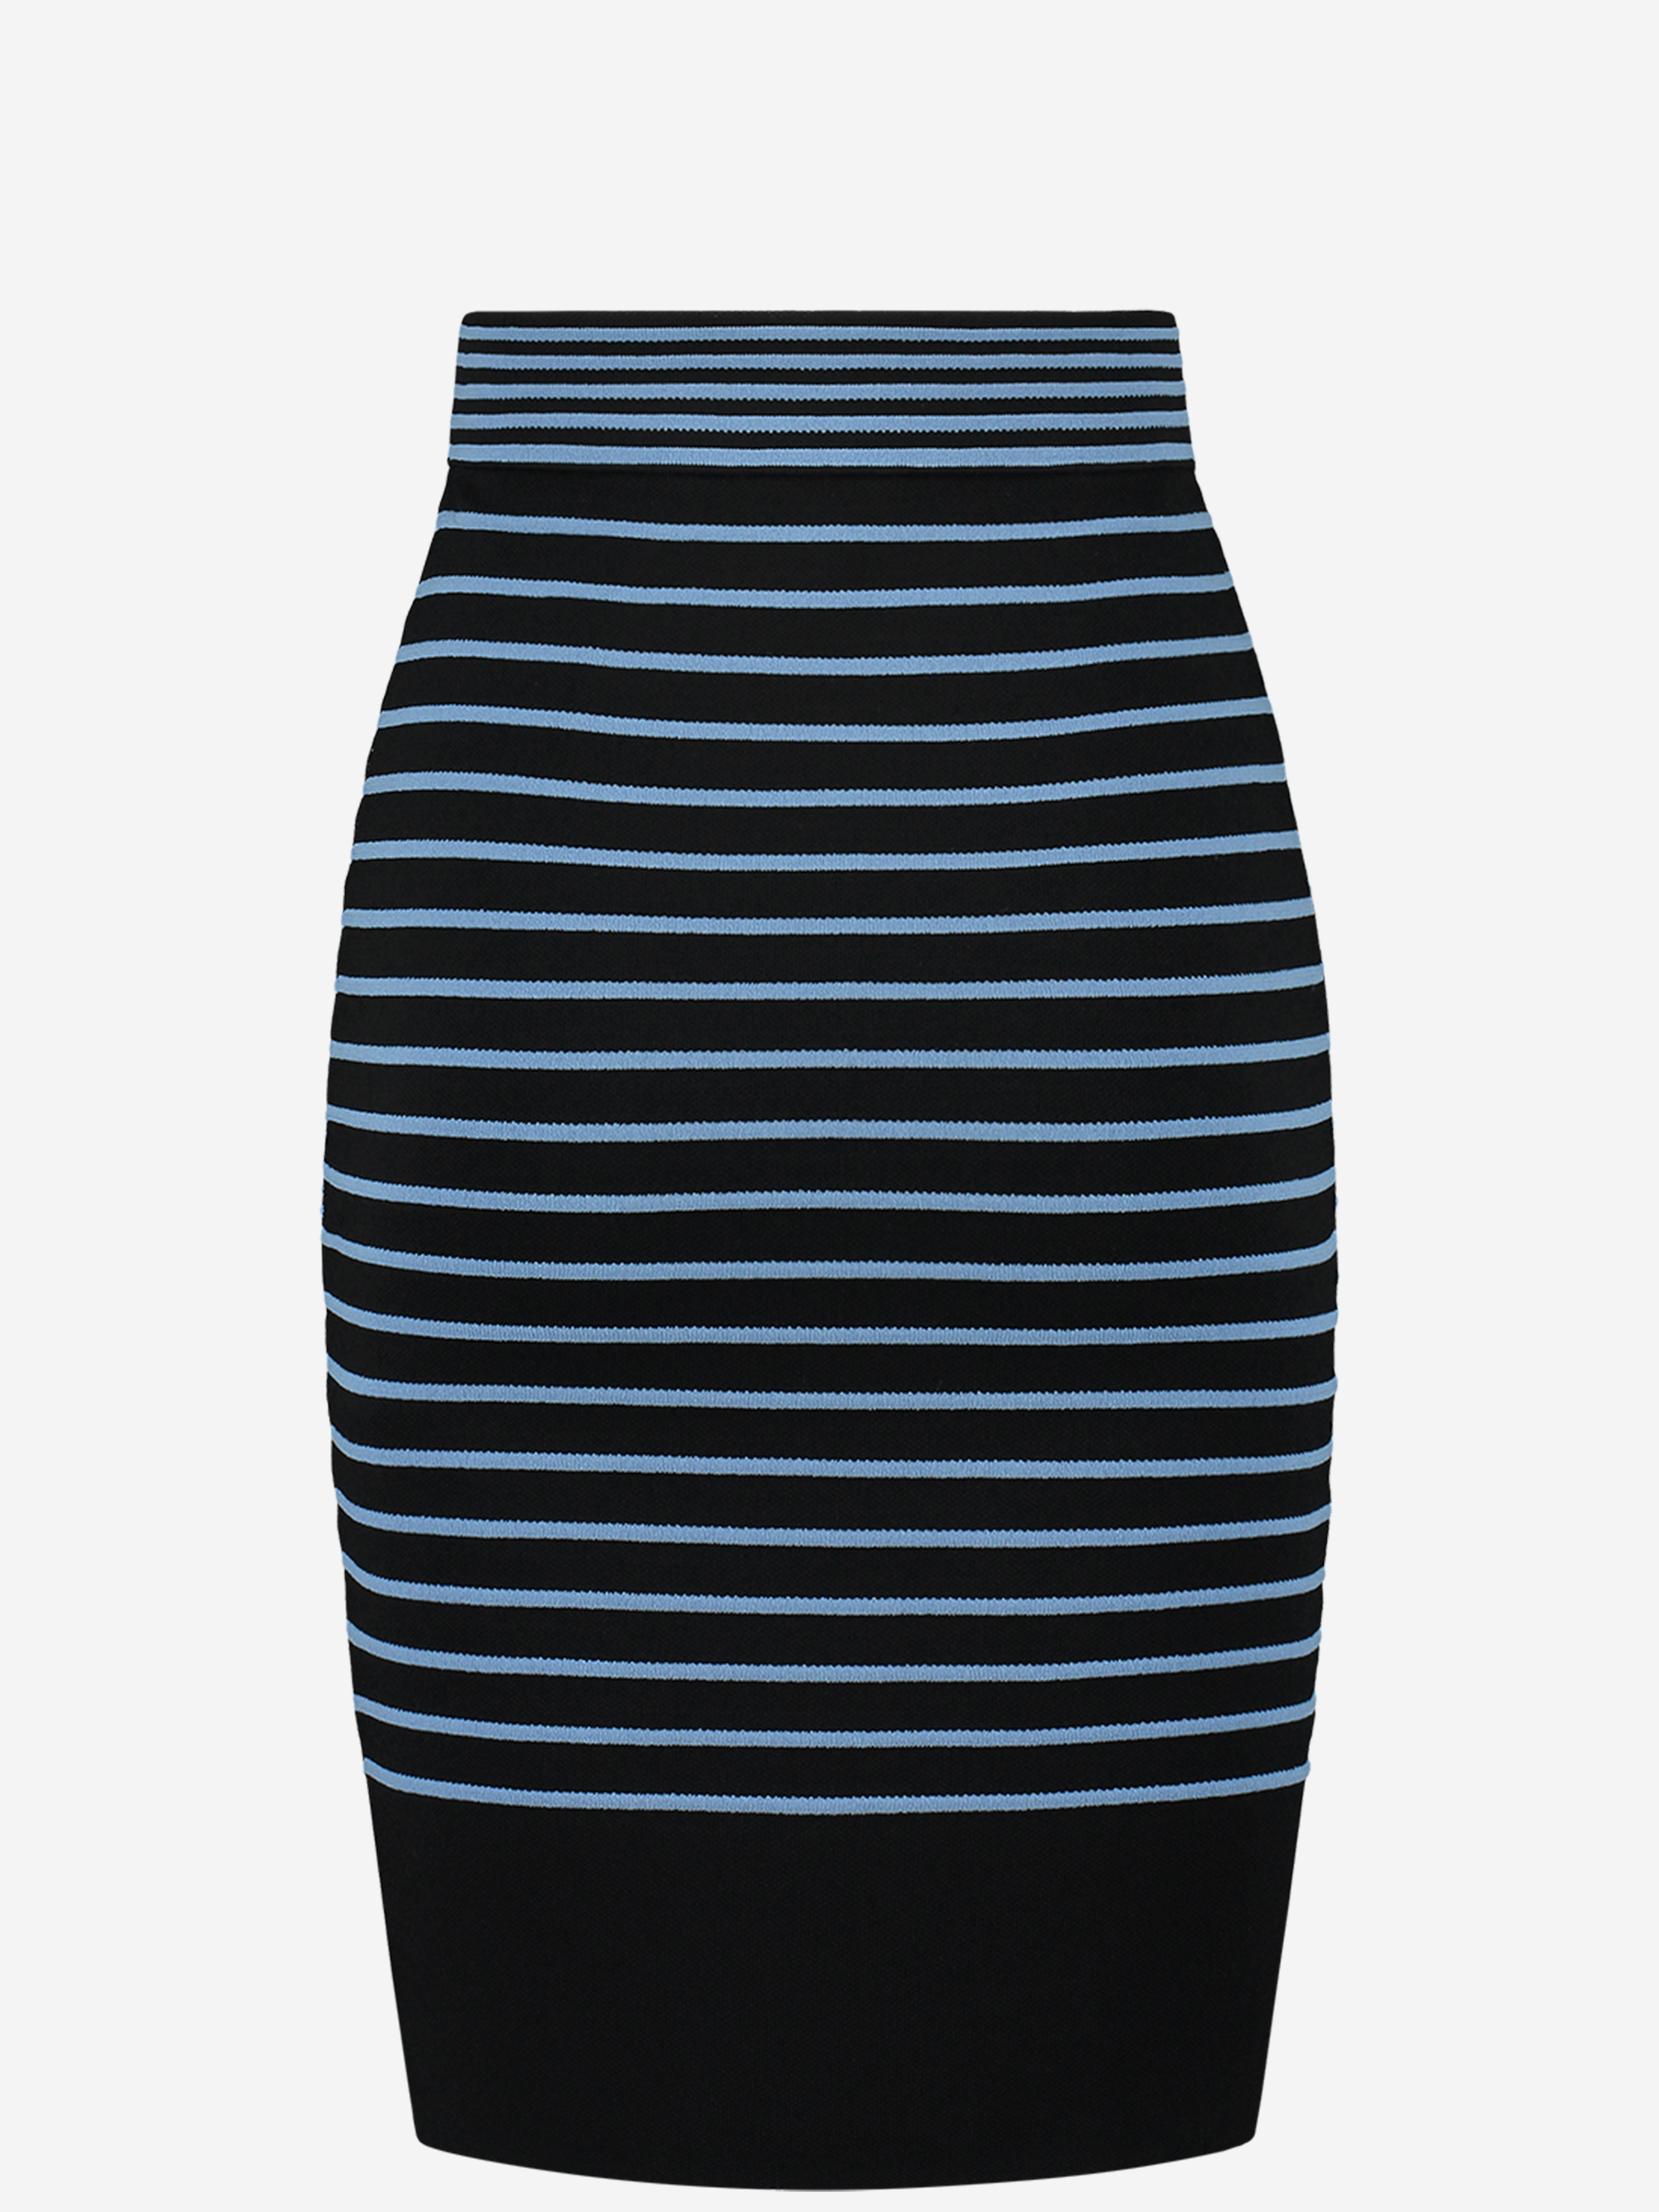 Kassy Stripe Skirt